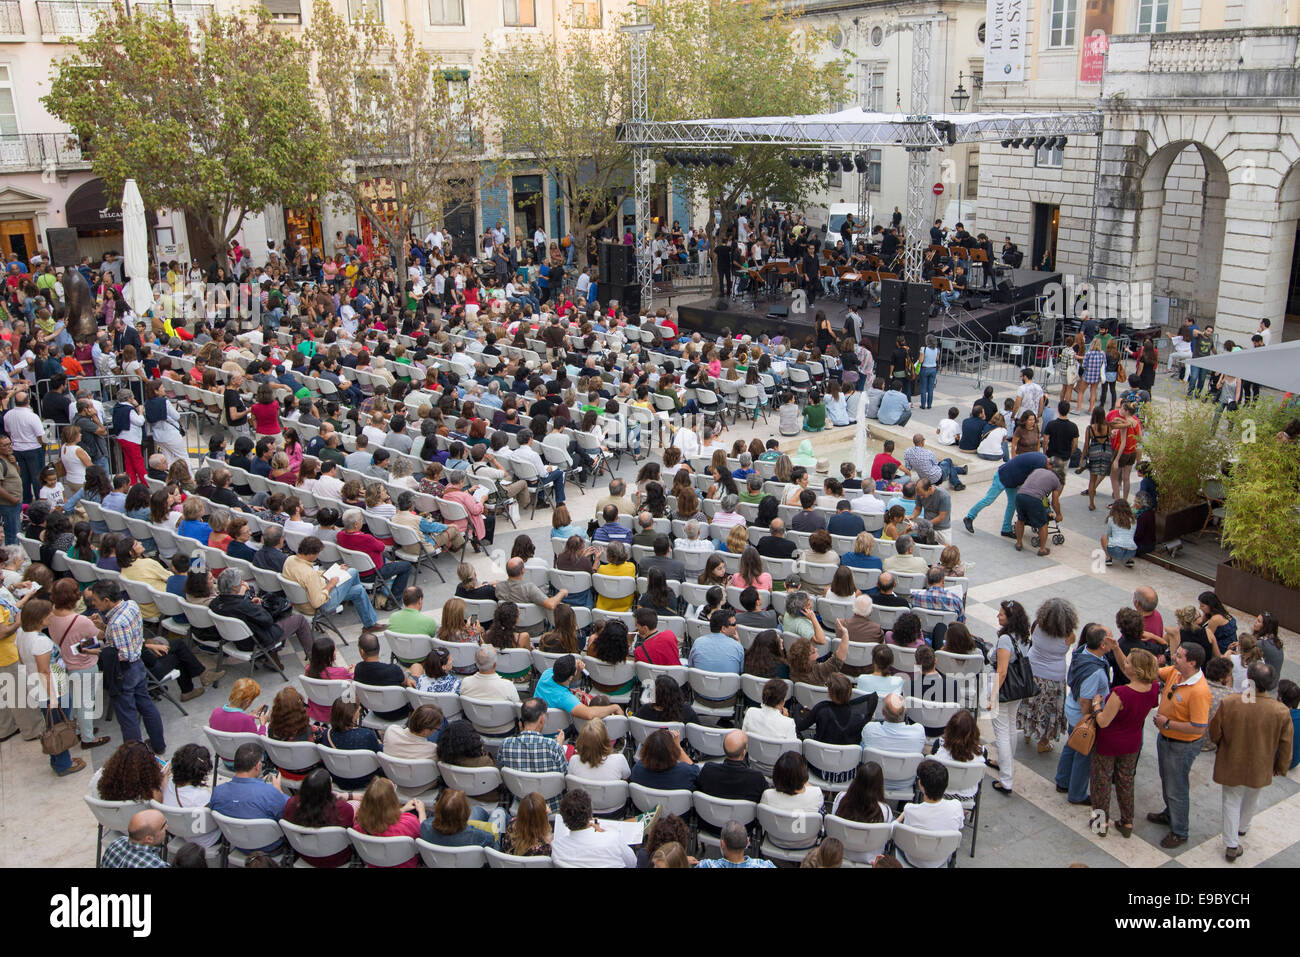 Le 4 octobre, l'EGEAC célèbre la fête de la musique parcours d'un plan sonore au coeur de Lisbonne. La musique dans le Square Banque D'Images